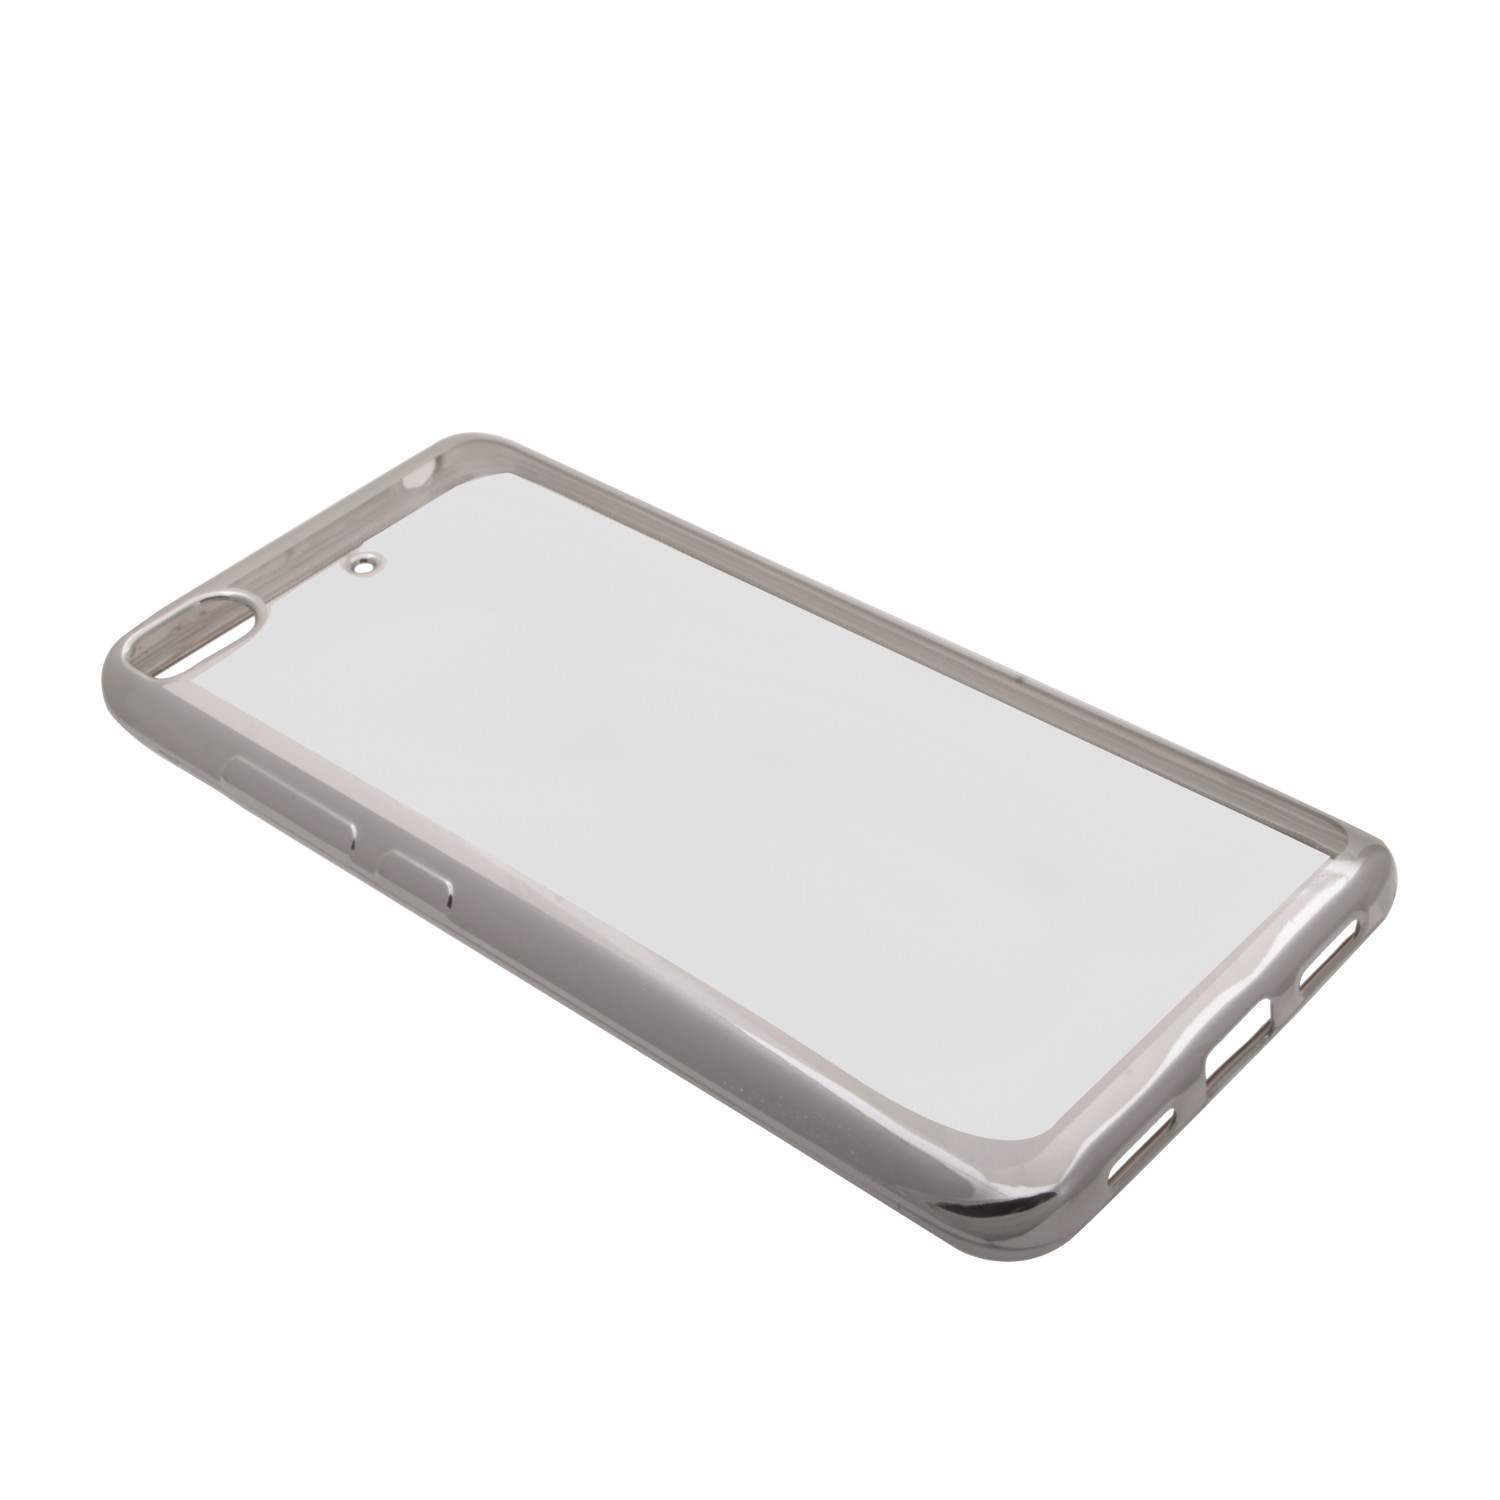 Накладка Xiaomi Mi 5s силиконовая прозрачная с хромированным бампером серебро